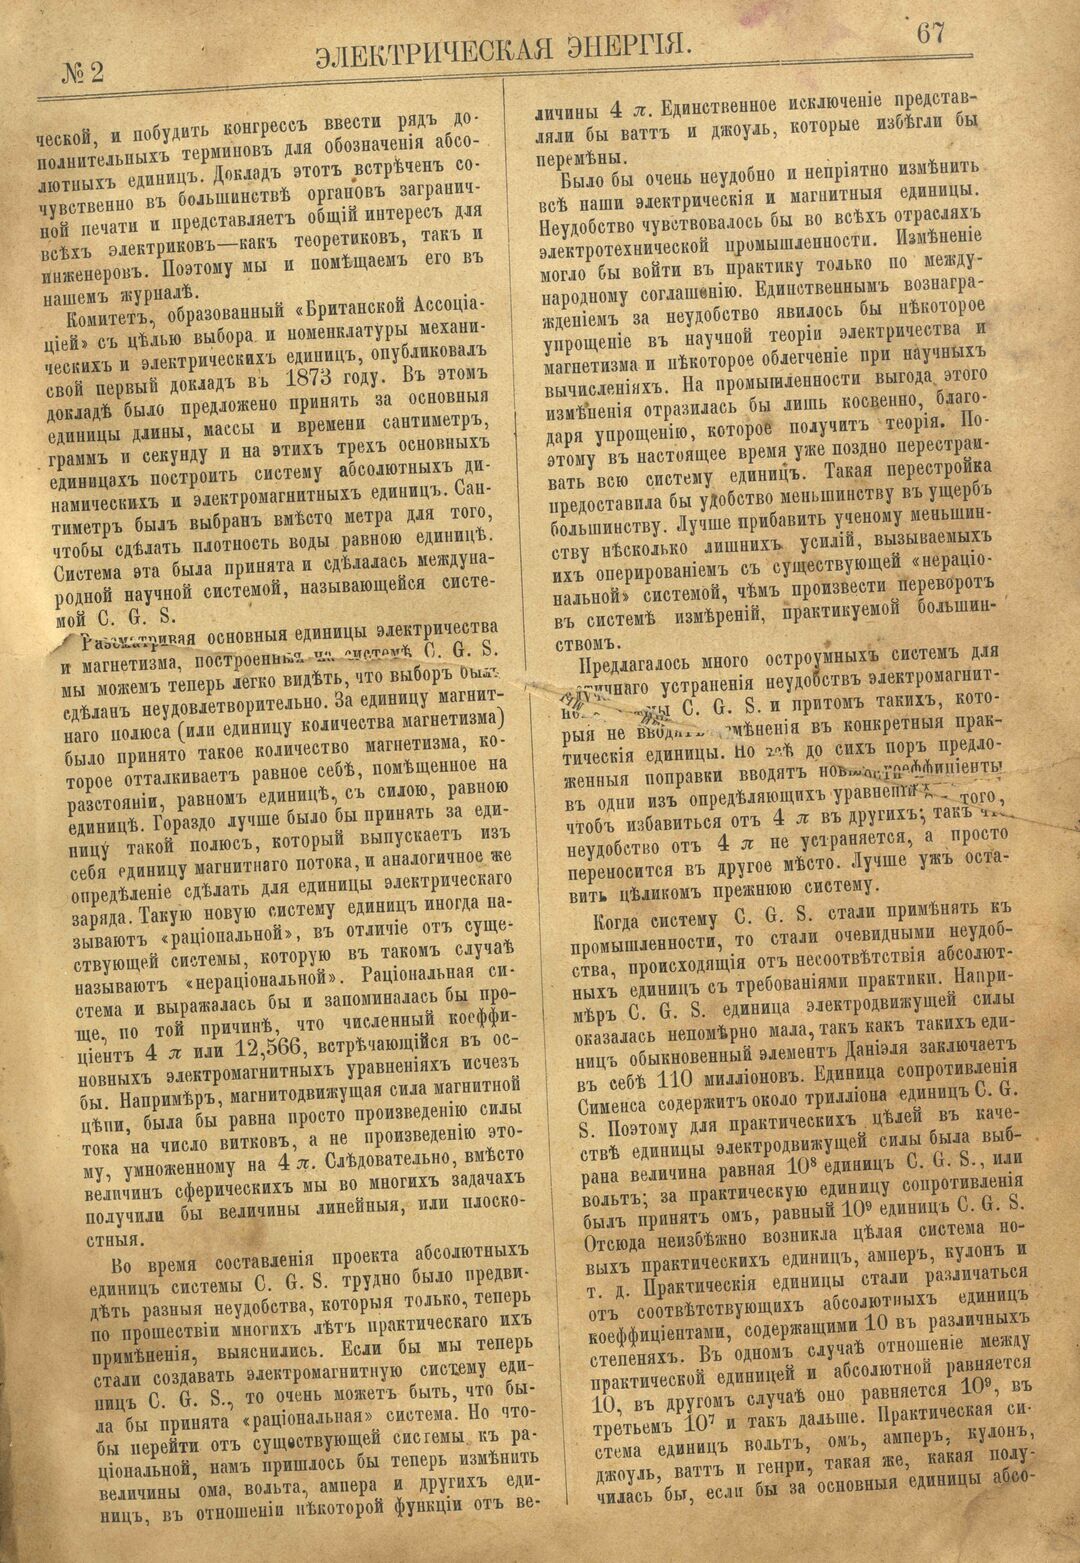 Рис. 1. Журнал Электрическая Энергiя, 2 номер, февраль, 1904 года, страница 67